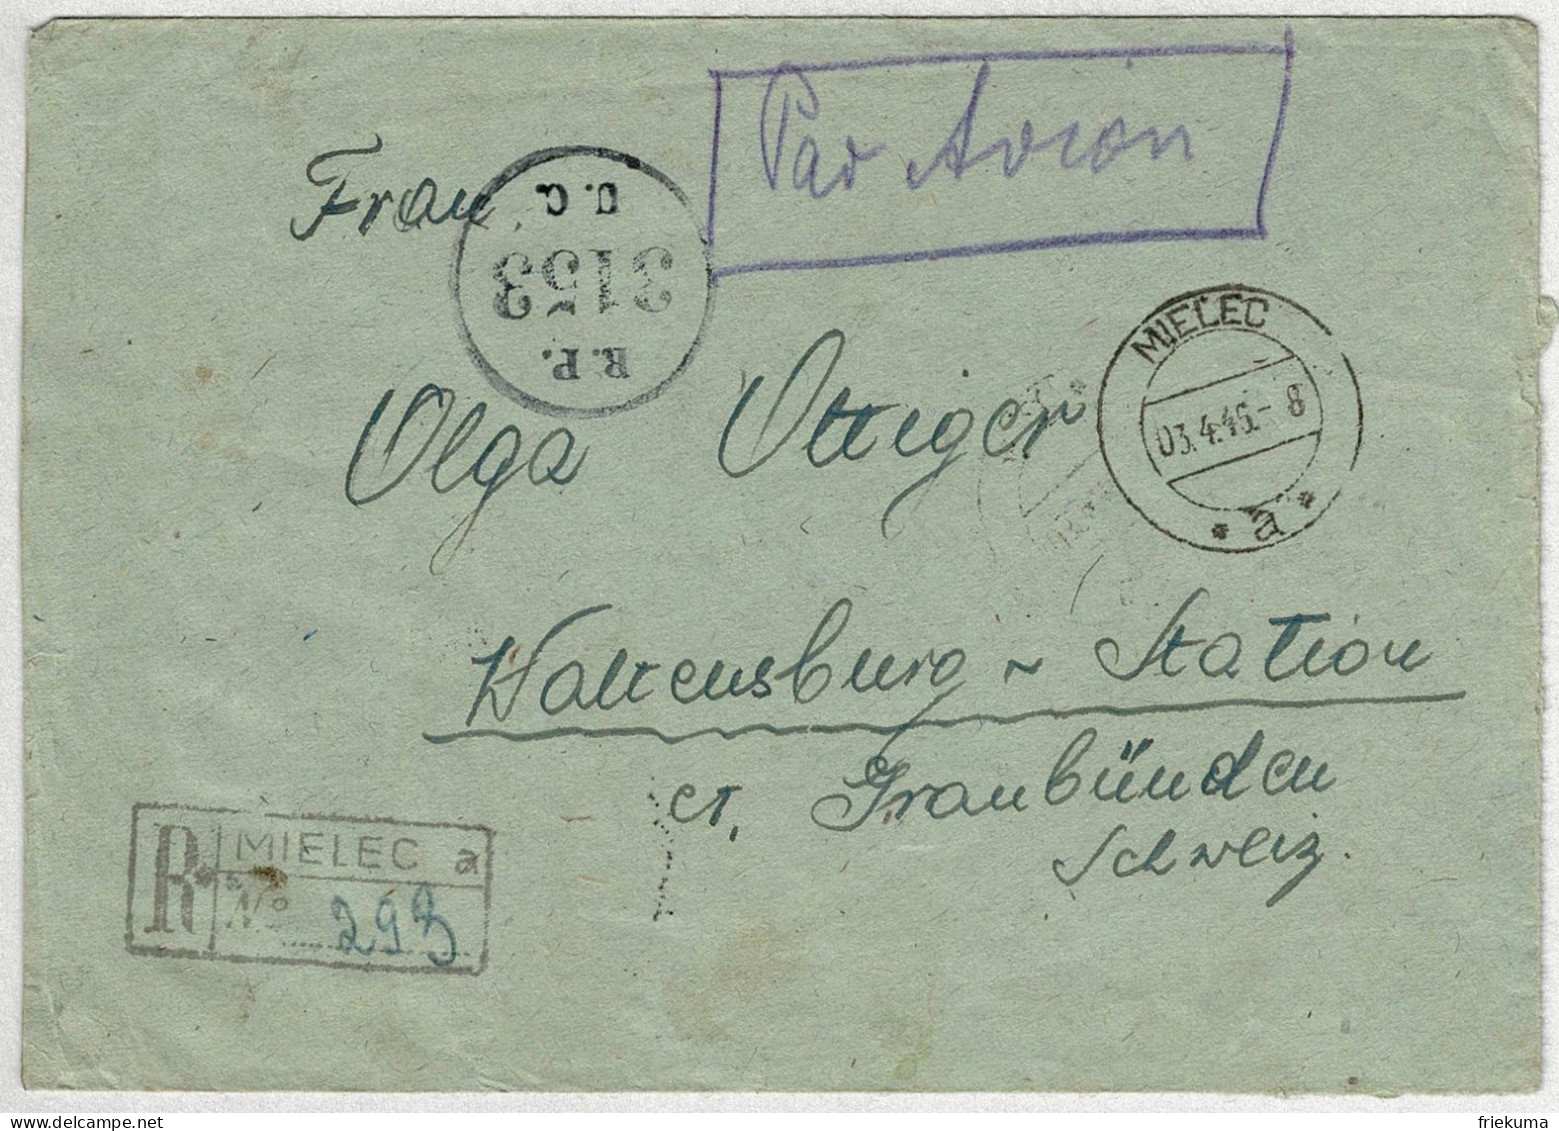 Polen / Polska 1946, Brief Einschreiben Mielec - Waltensburg Station (Schweiz), Frankatur Rückseite, Zensur R.P. 3153 - Covers & Documents